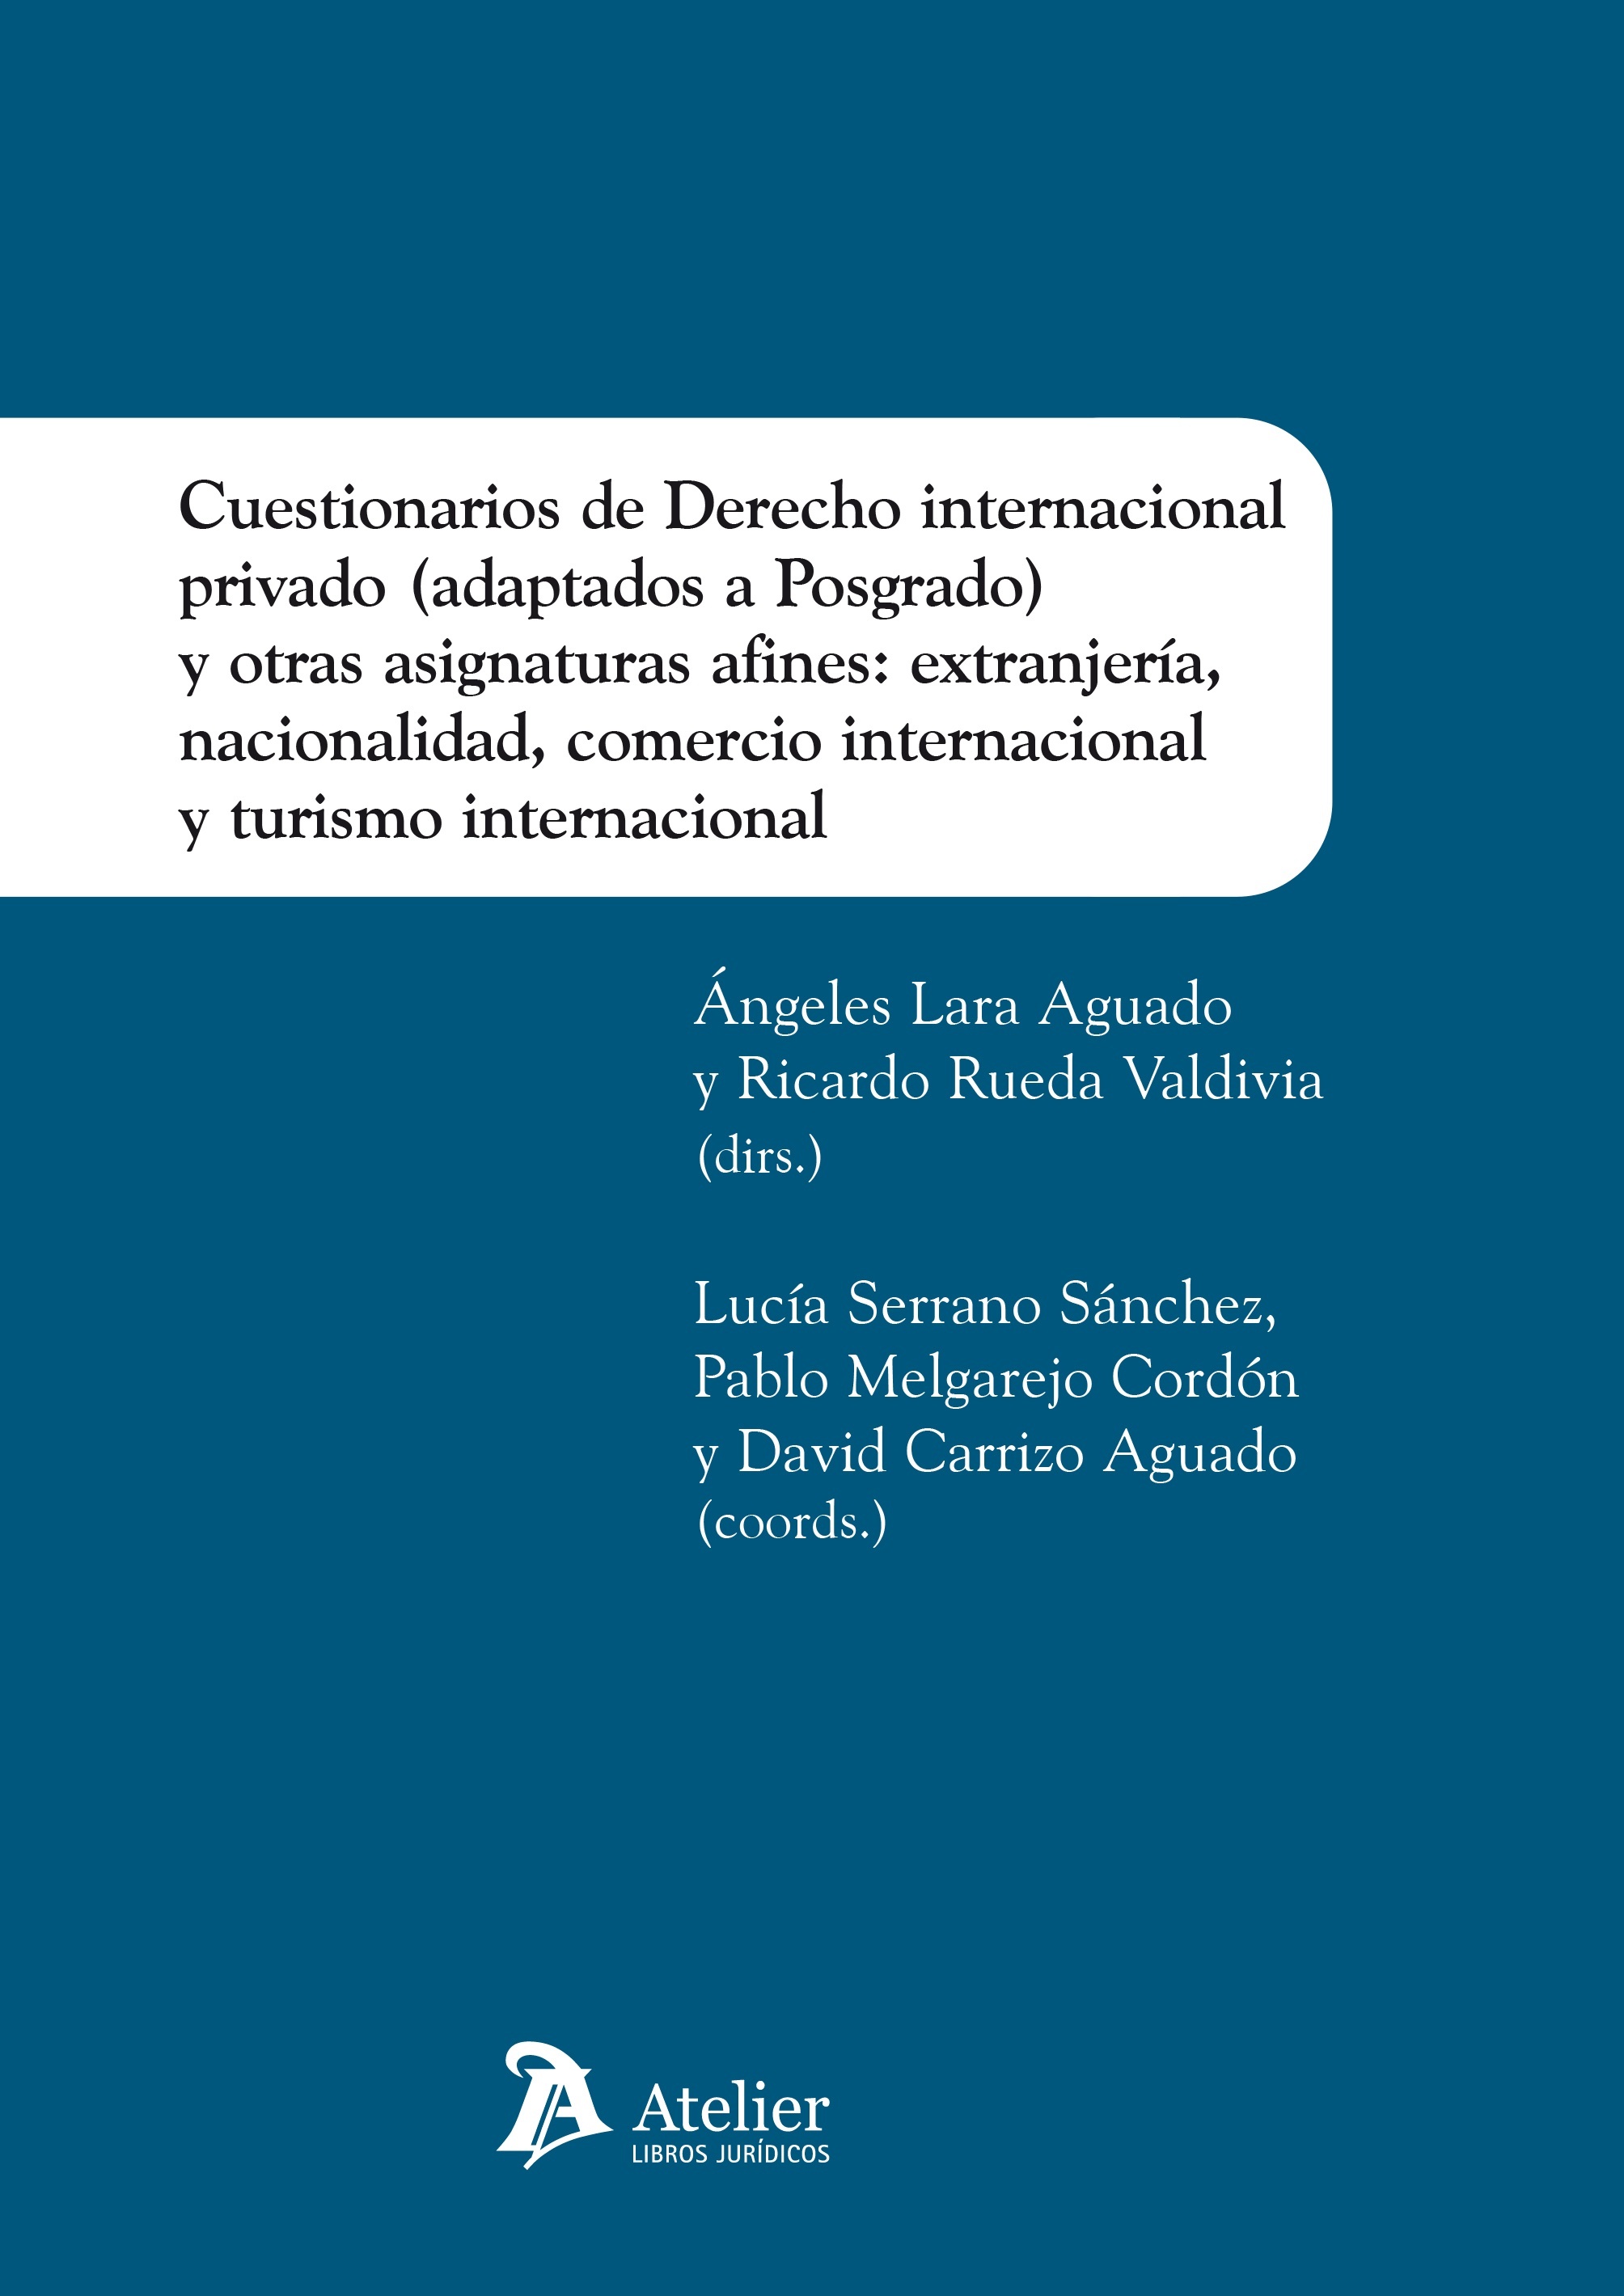 Cuestionarios de Derecho Internacional Privado (adaptados a Posgrado) y otras asignaturas afines: "Extranjería, Nacionalidad, Comercio internacional y Turismo internacional"